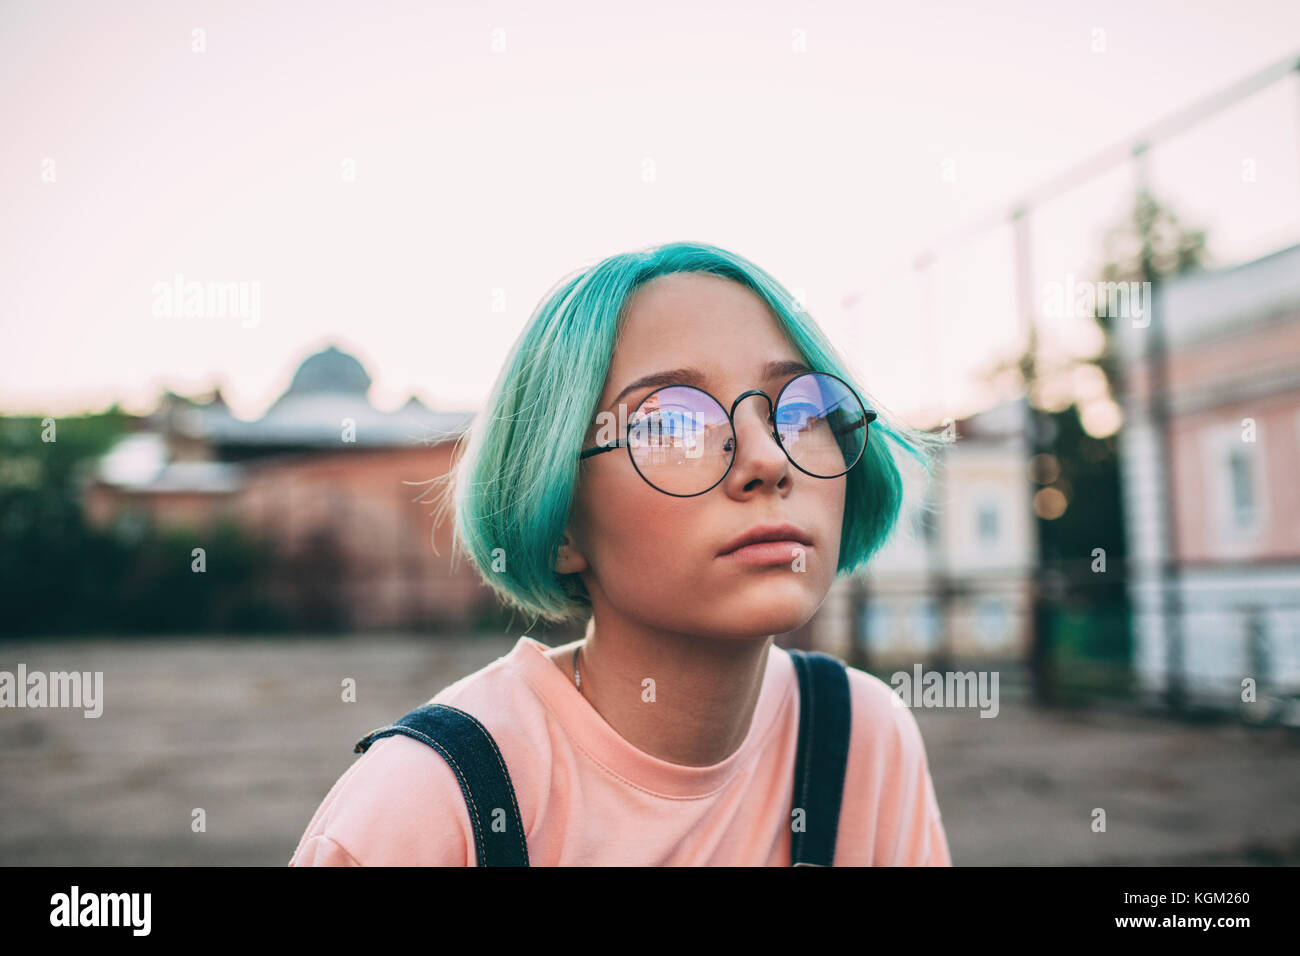 Ritratto di ragazza adolescente con verde capelli tinti indossando occhiali da vista Foto Stock